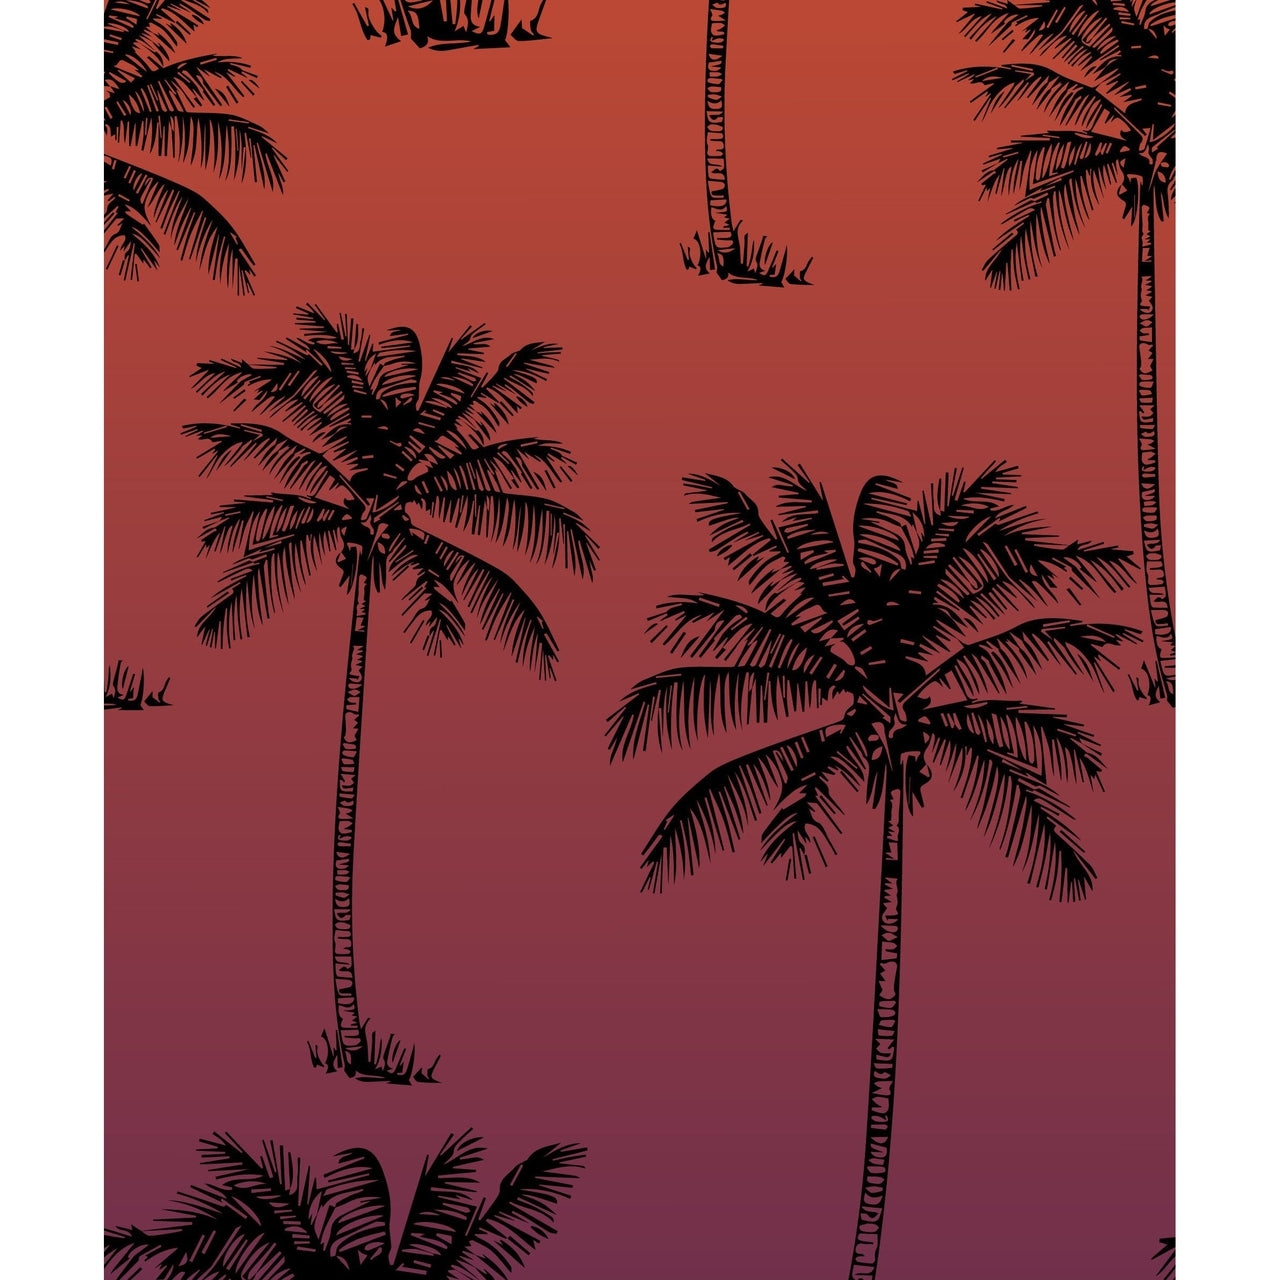 Sunset Palm Tree Socks - Hocsocx Inc